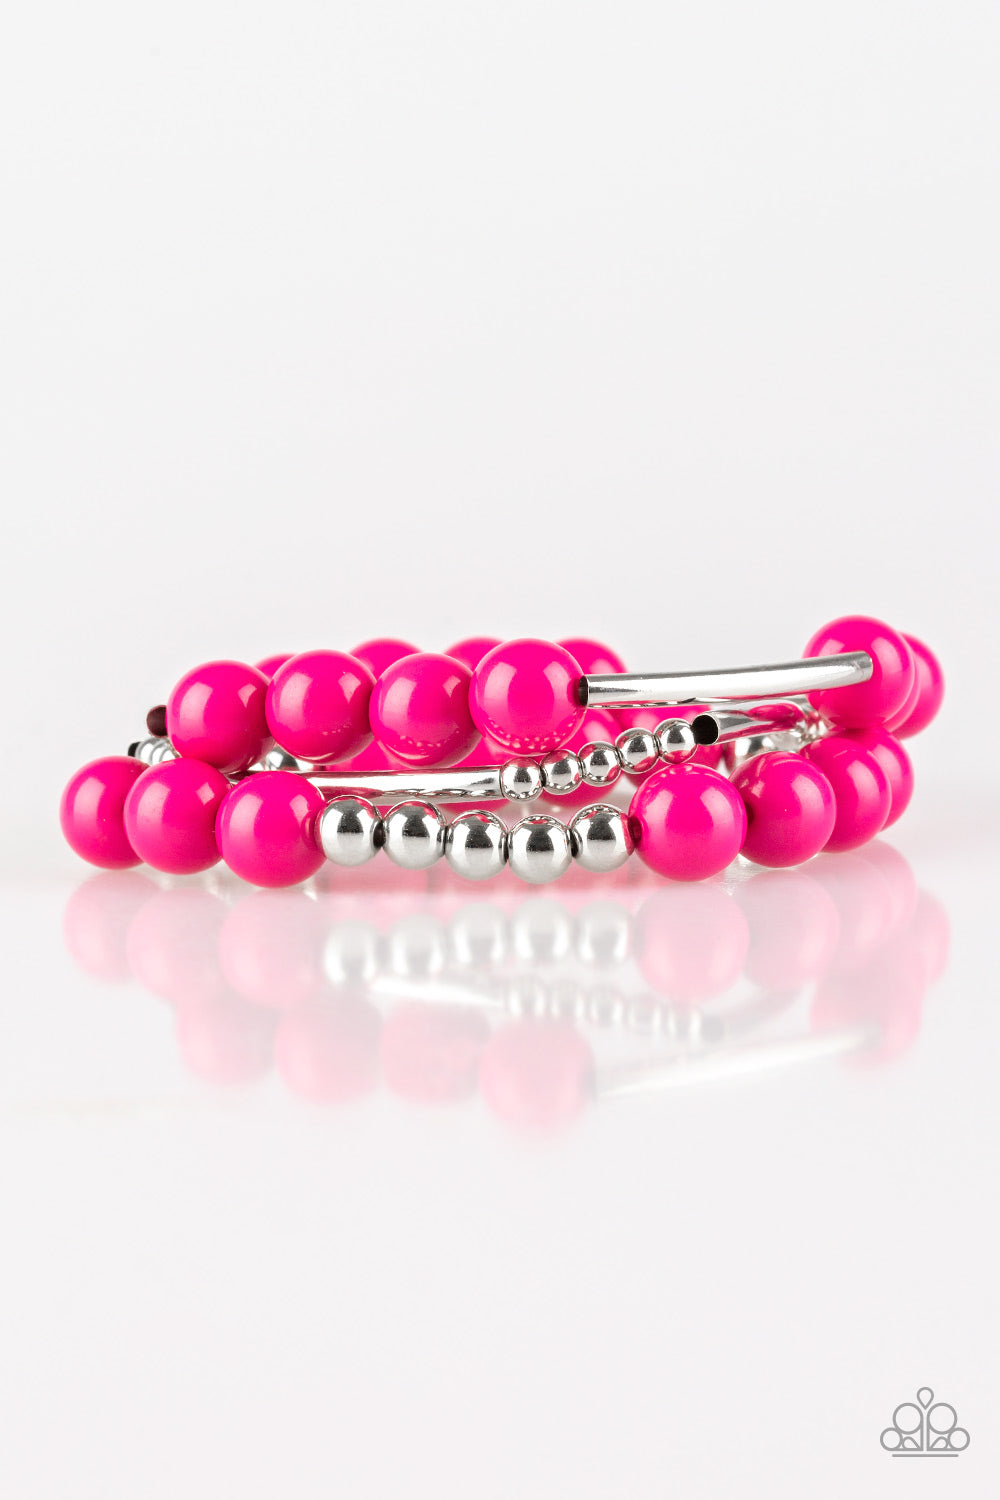 New Adventures - Pink Bracelet